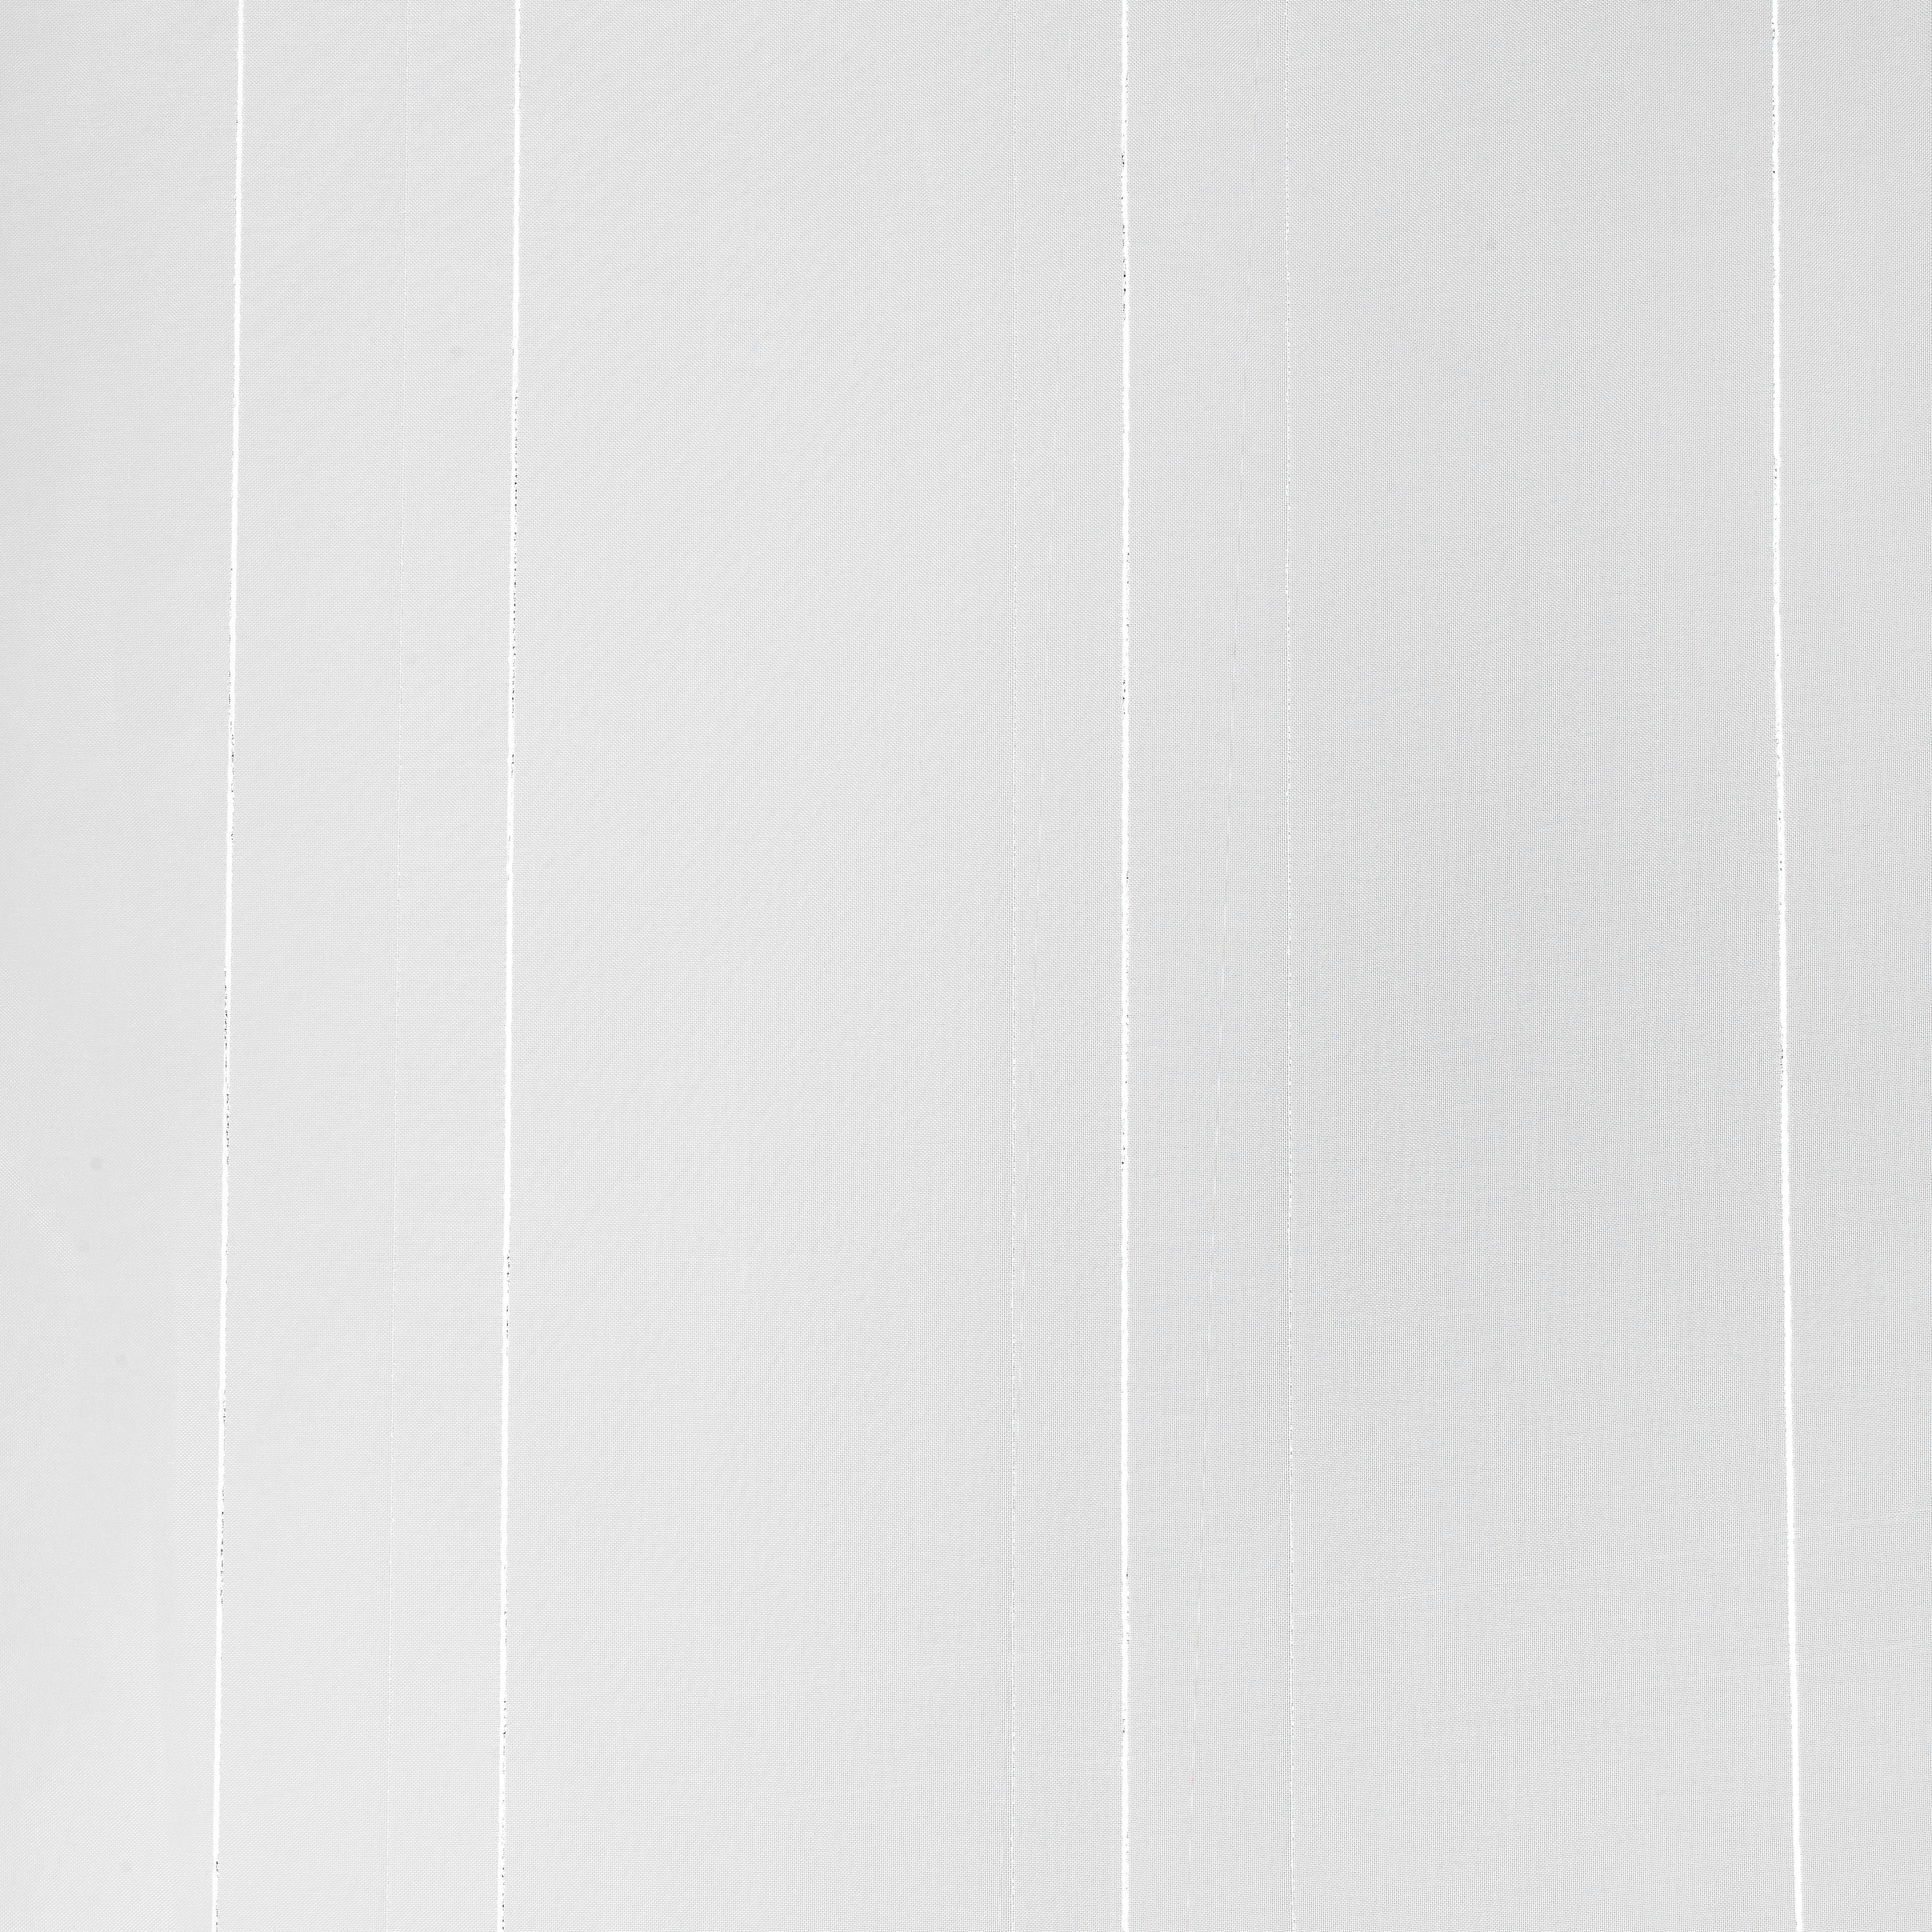 ZÁCLONA, priehľadné, 300 cm - biela, Konventionell, textil (300cm) - Esposa